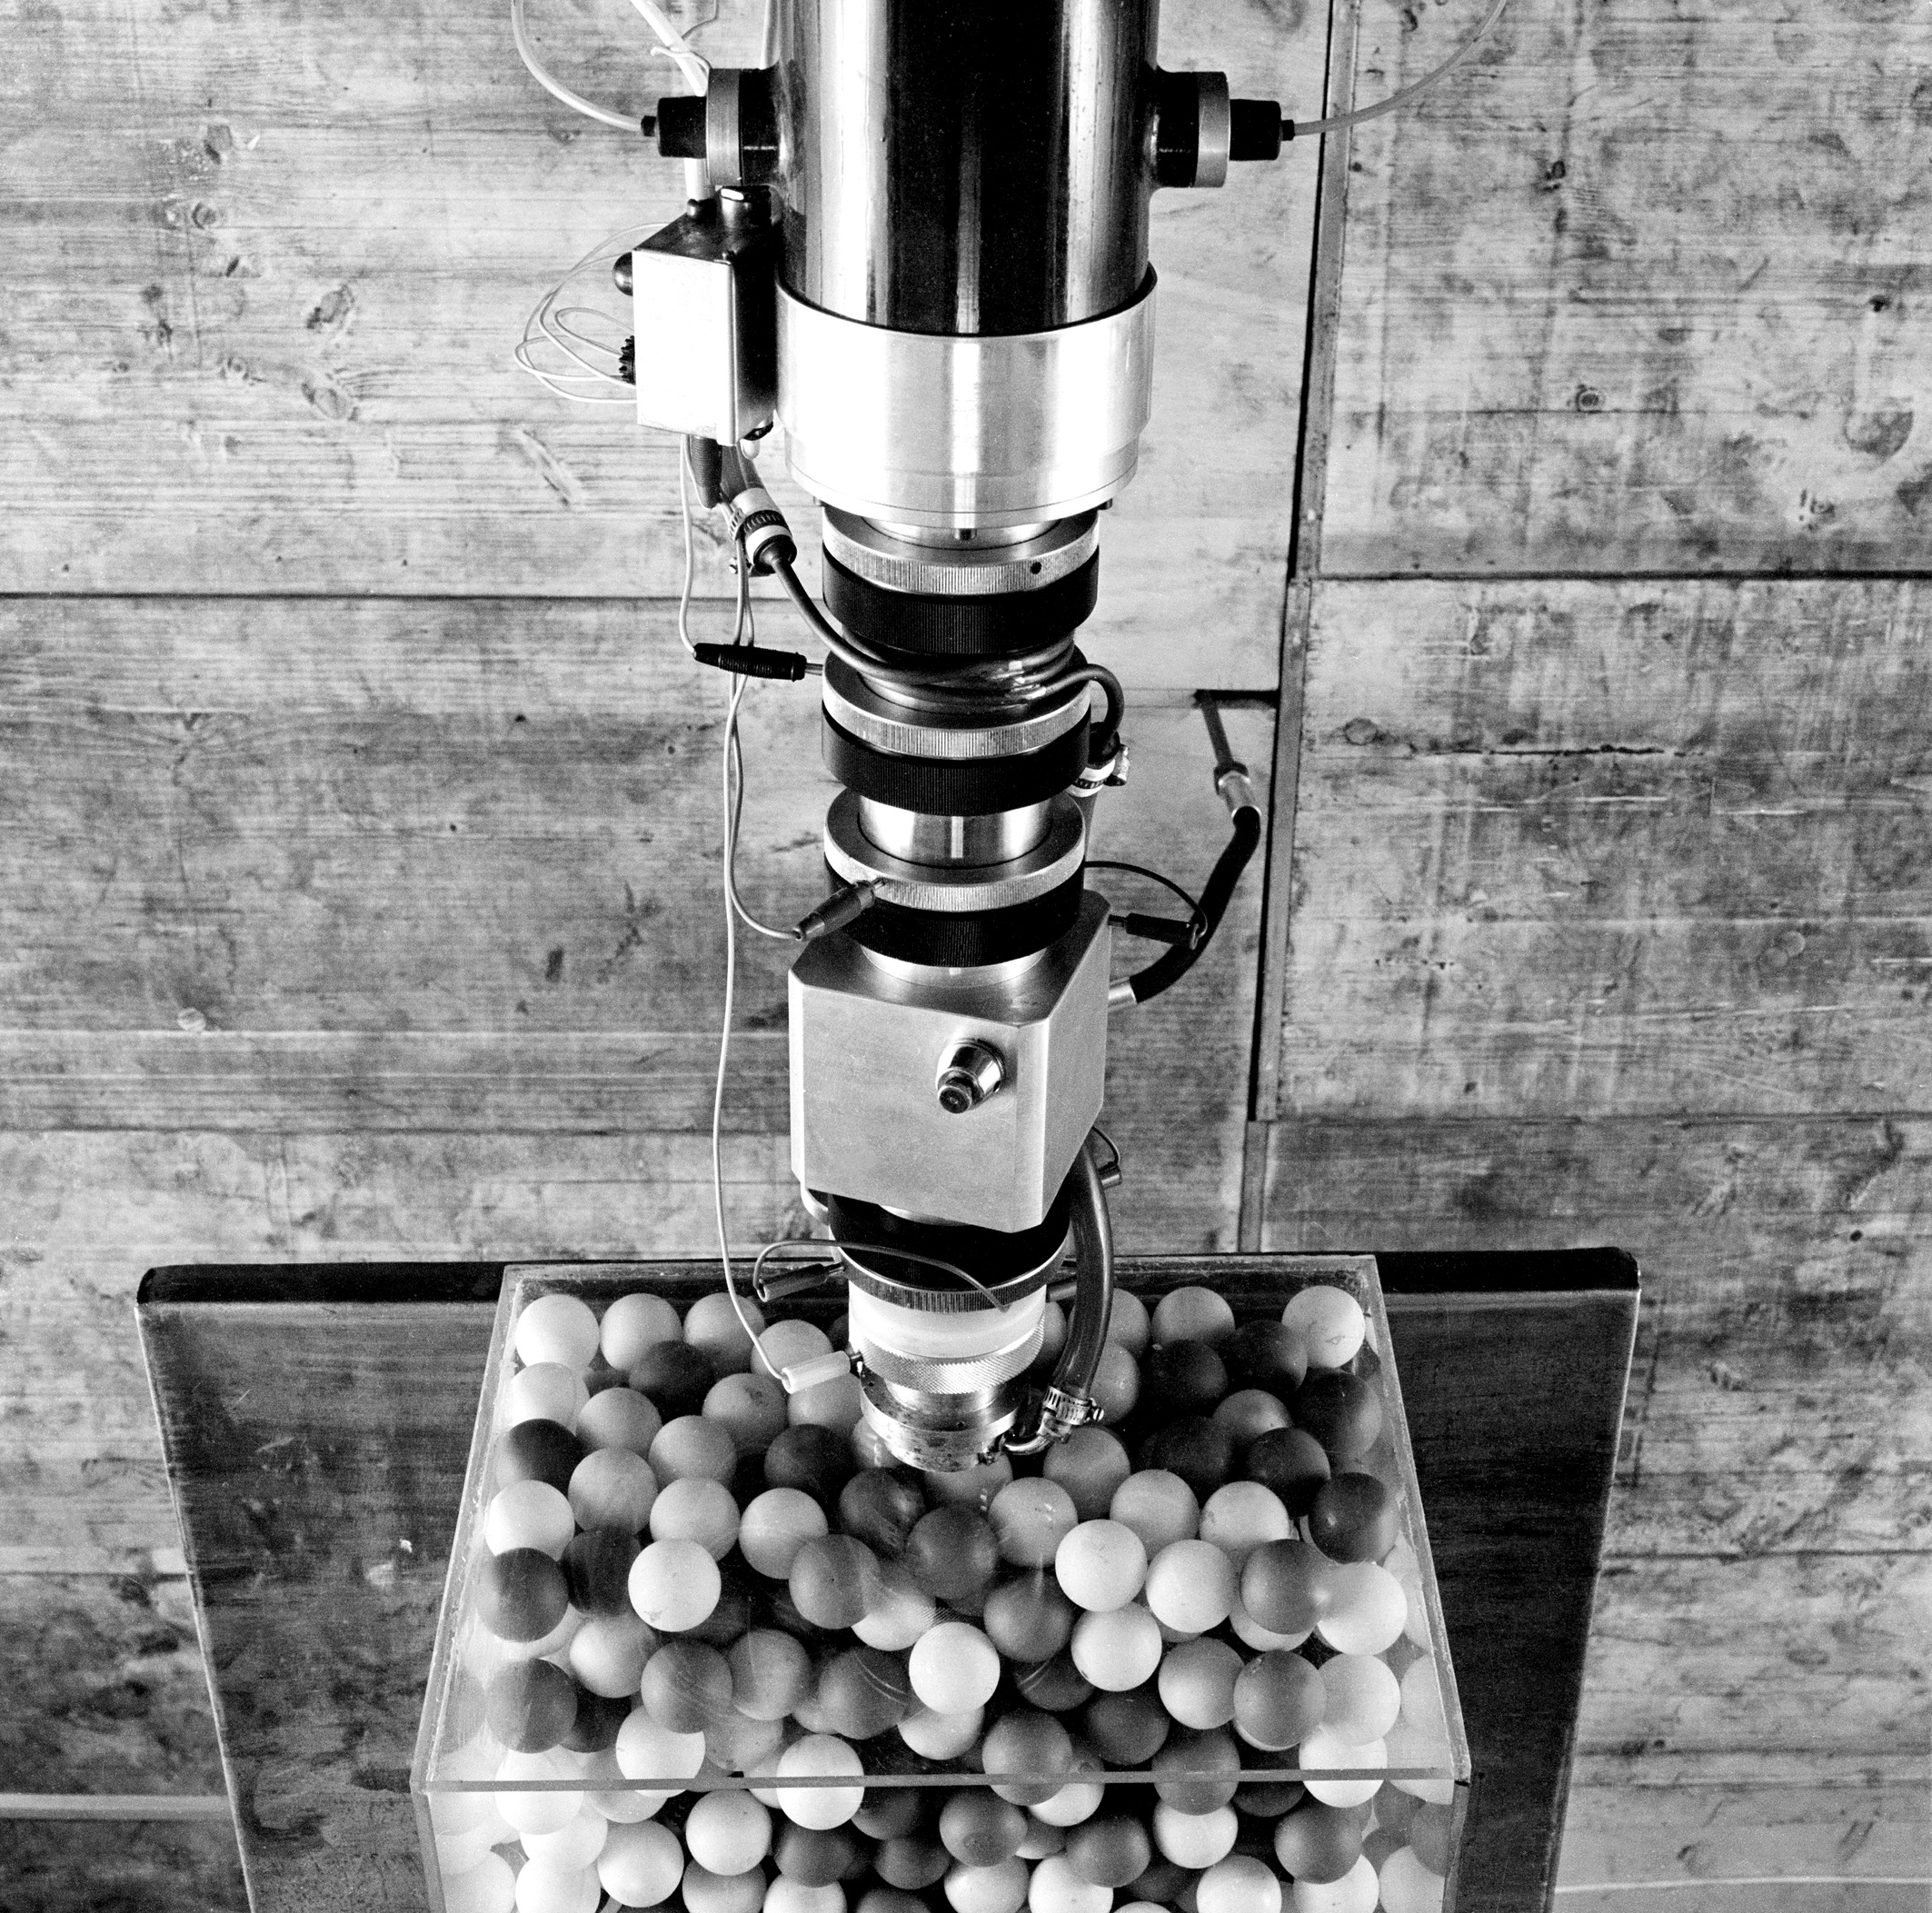 Versuchsaufbau zur Messung der Neutronendiffusion in einer Kugelschüttung, 1966